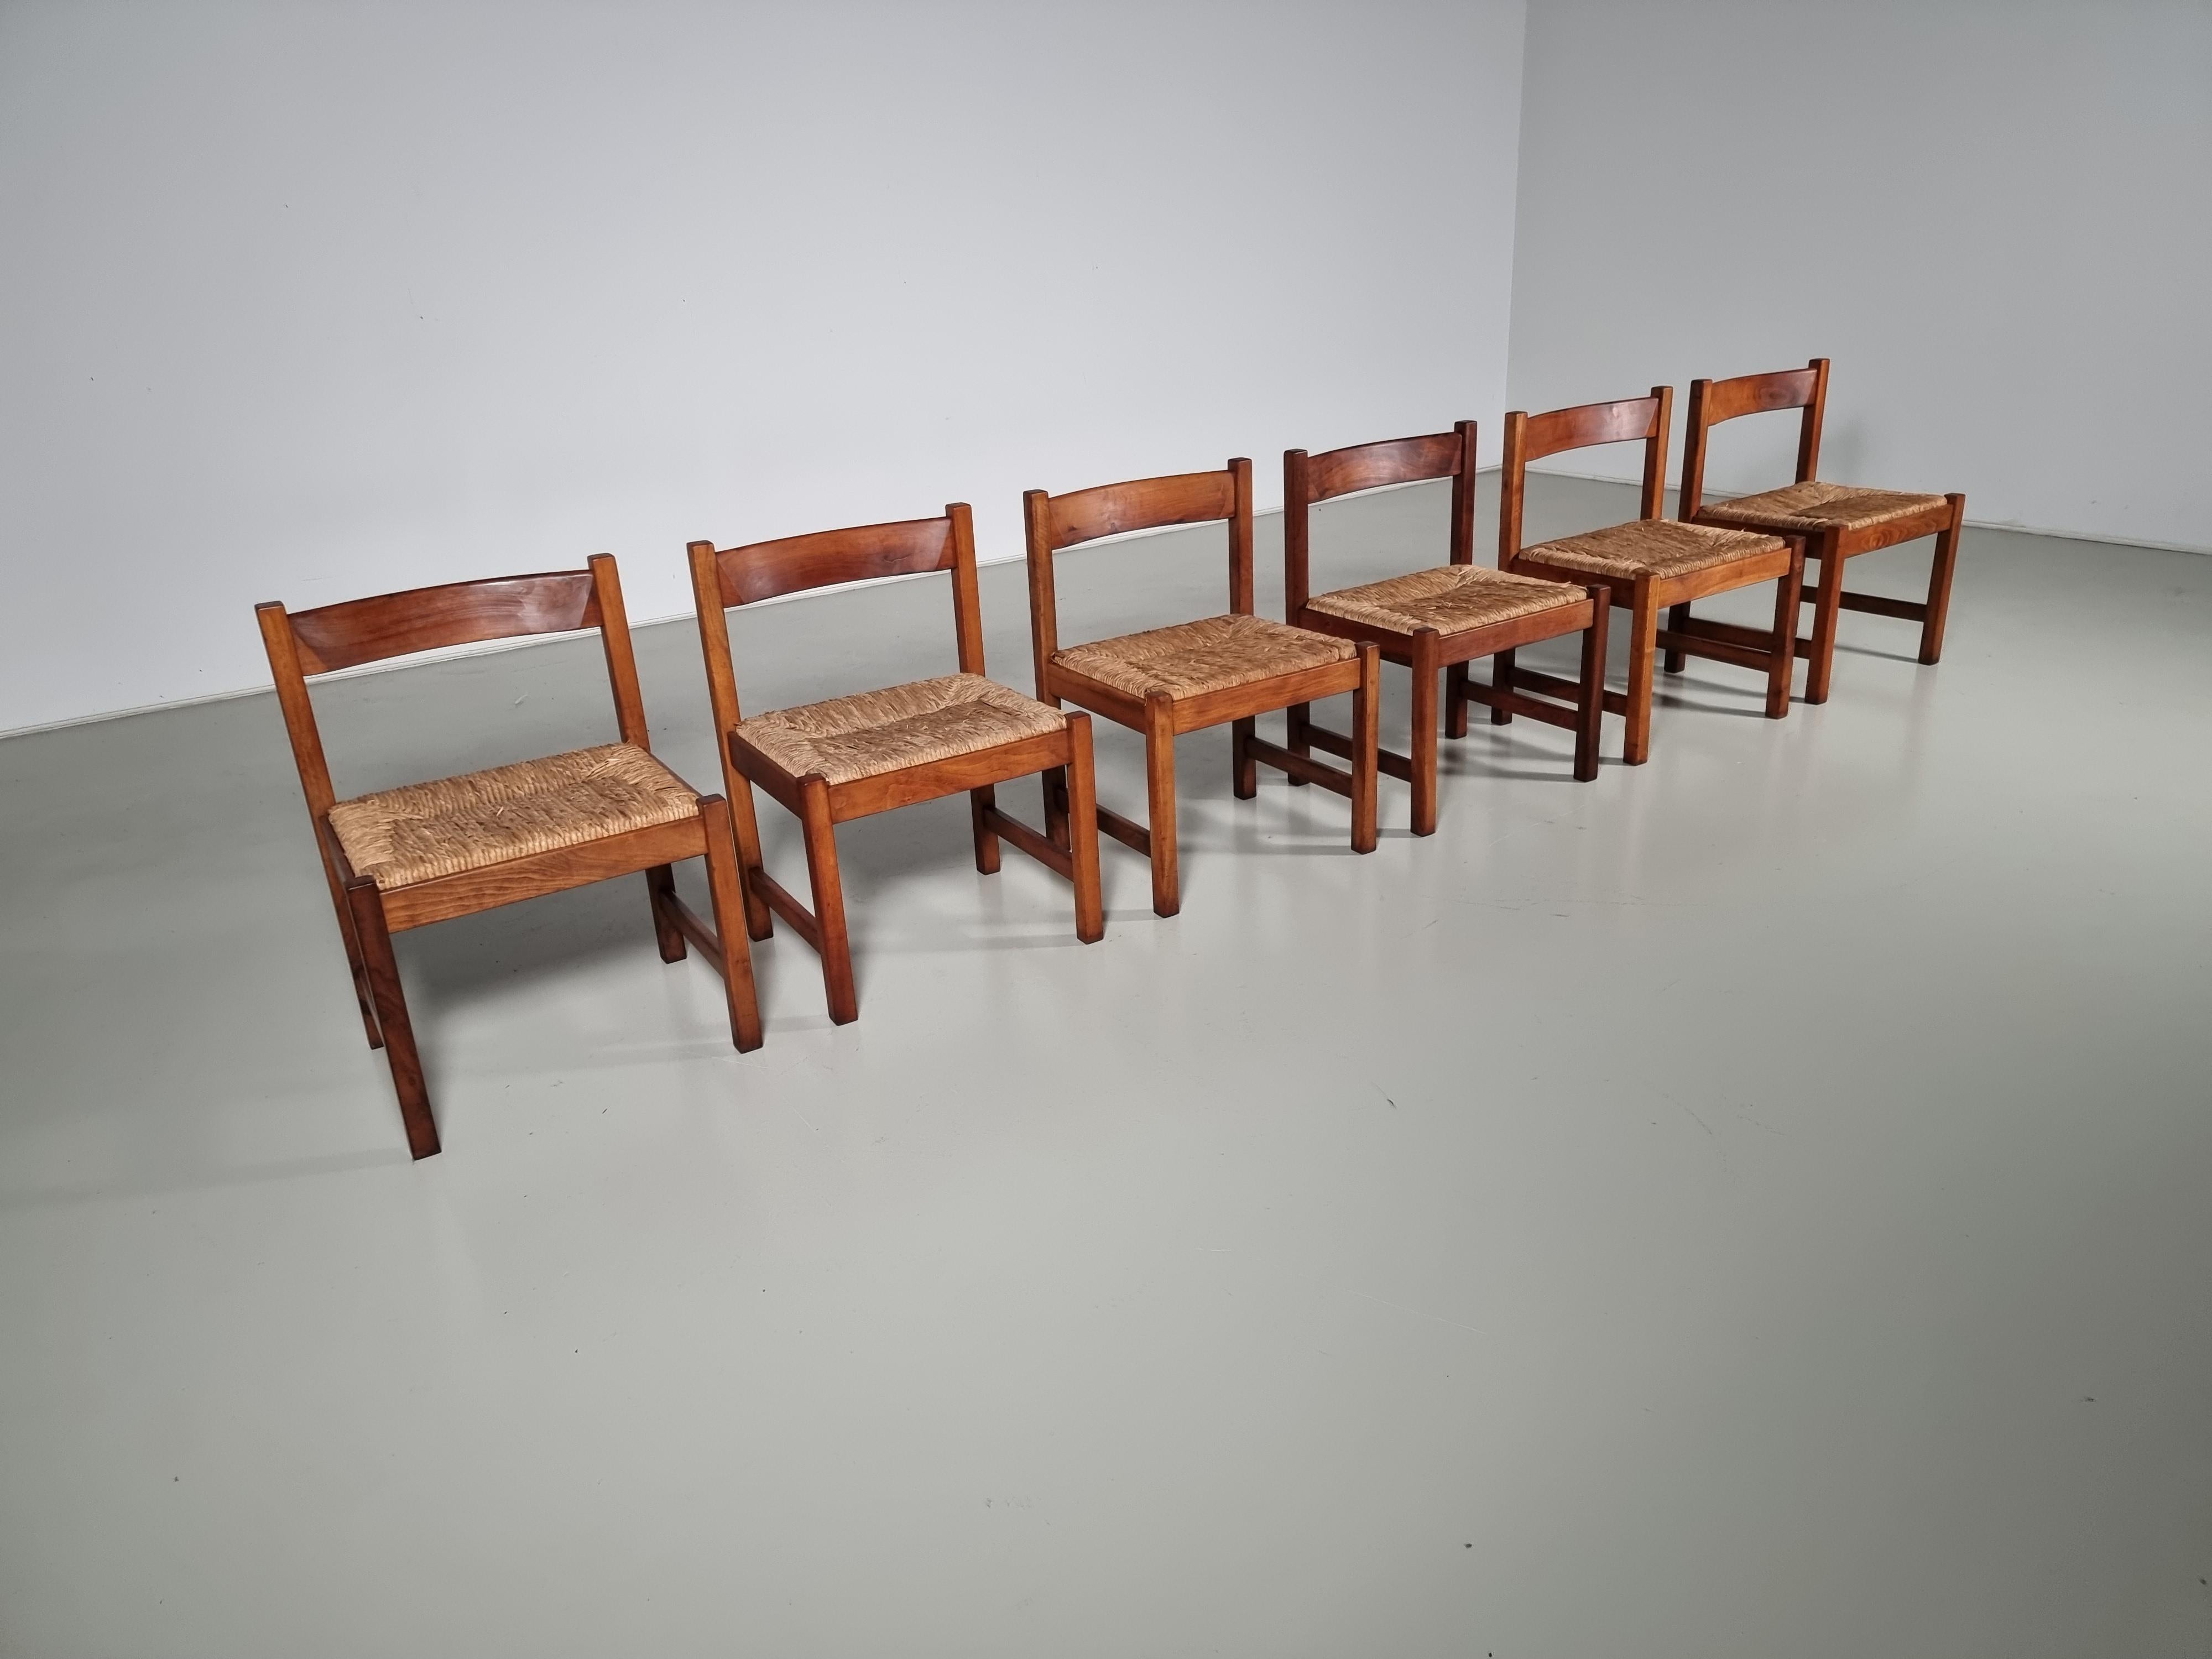 6 Stühle aus der Serie Torbecchia, entworfen von Giovanni Michelucci für Poltronova im Jahr 1964.
Struktur aus massivem Nussbaumholz mit gepolsterten Sitzen aus Binsen. Die Massivholzstühle haben im Laufe der Jahre eine wunderbare Patina angesetzt.